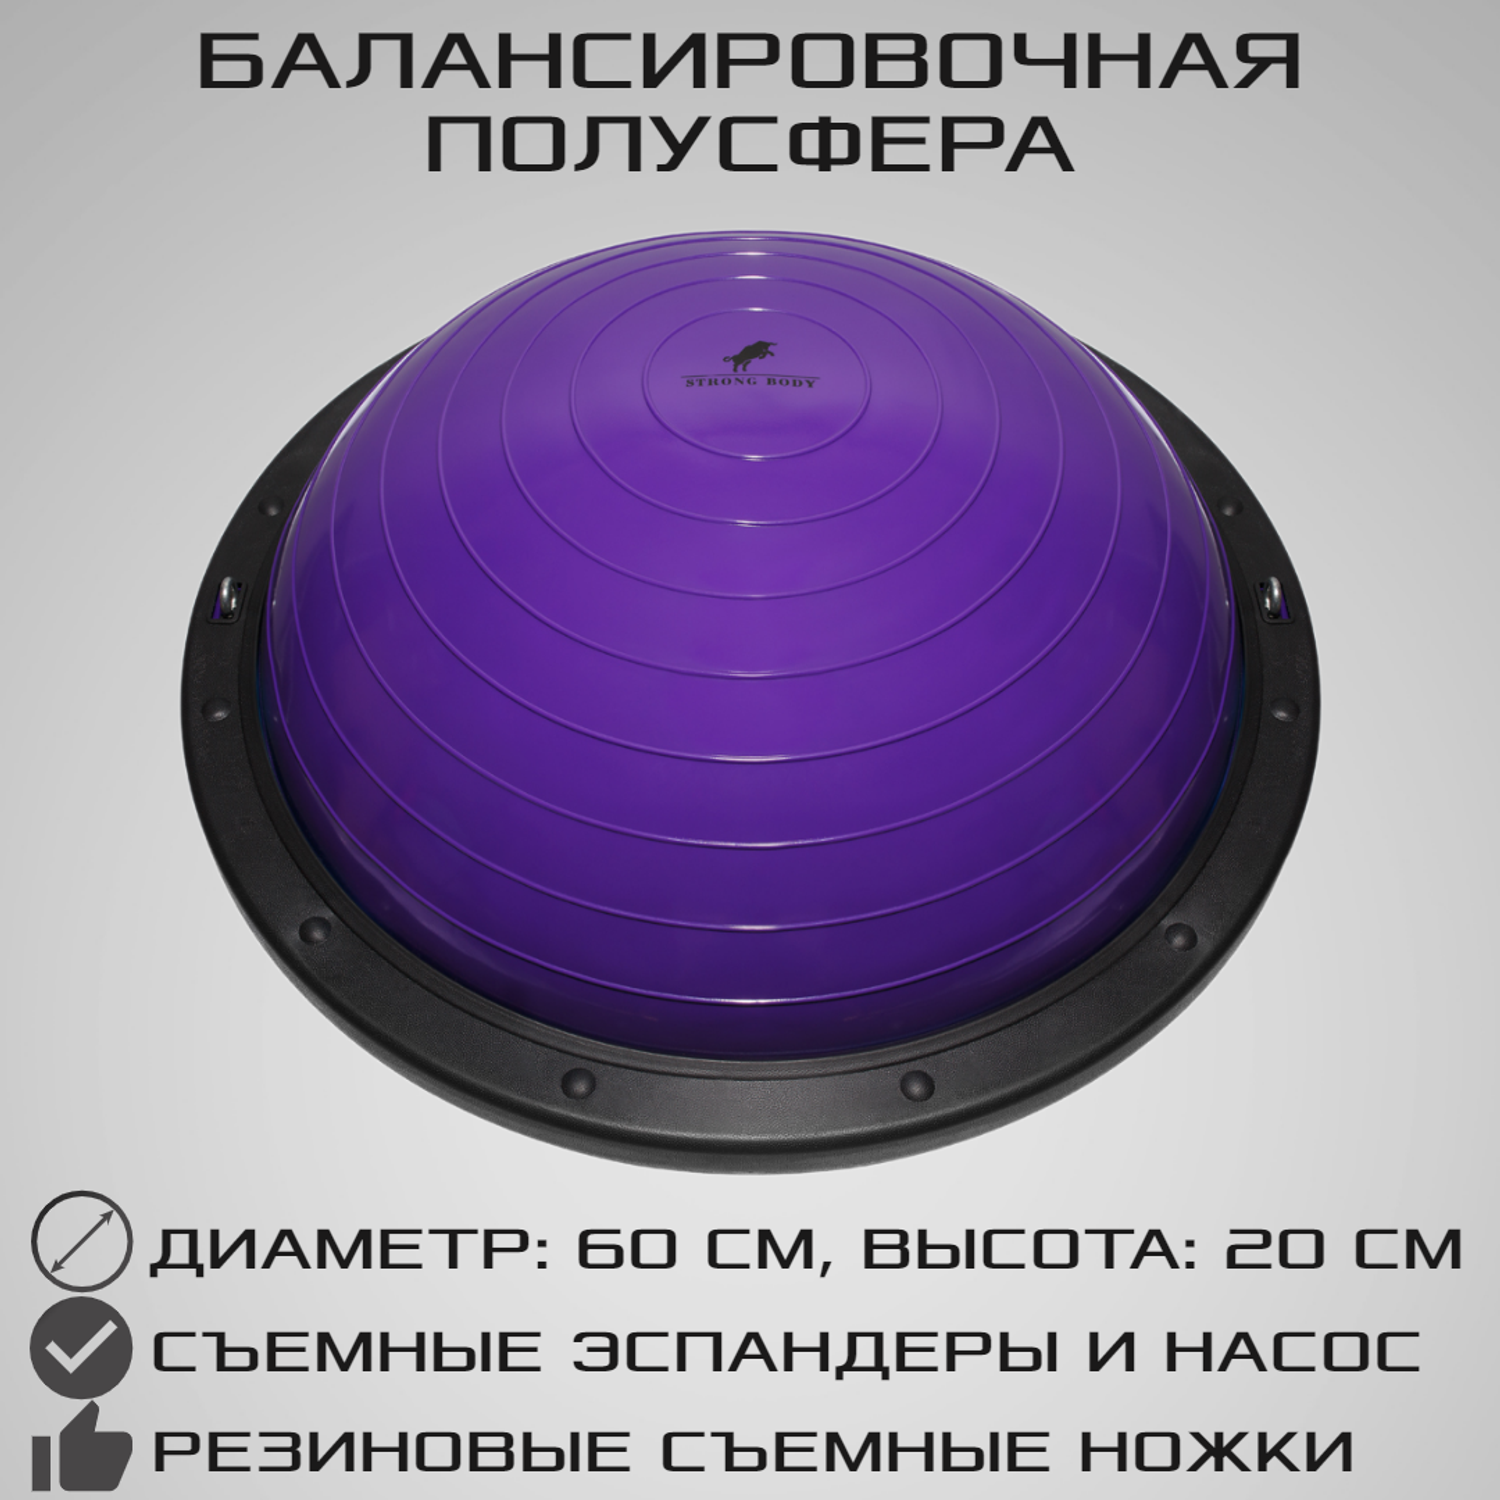 Балансировочная полусфера BOSU STRONG BODY PROFI в комплекте со съемными эспандерами фиолетовая - фото 1